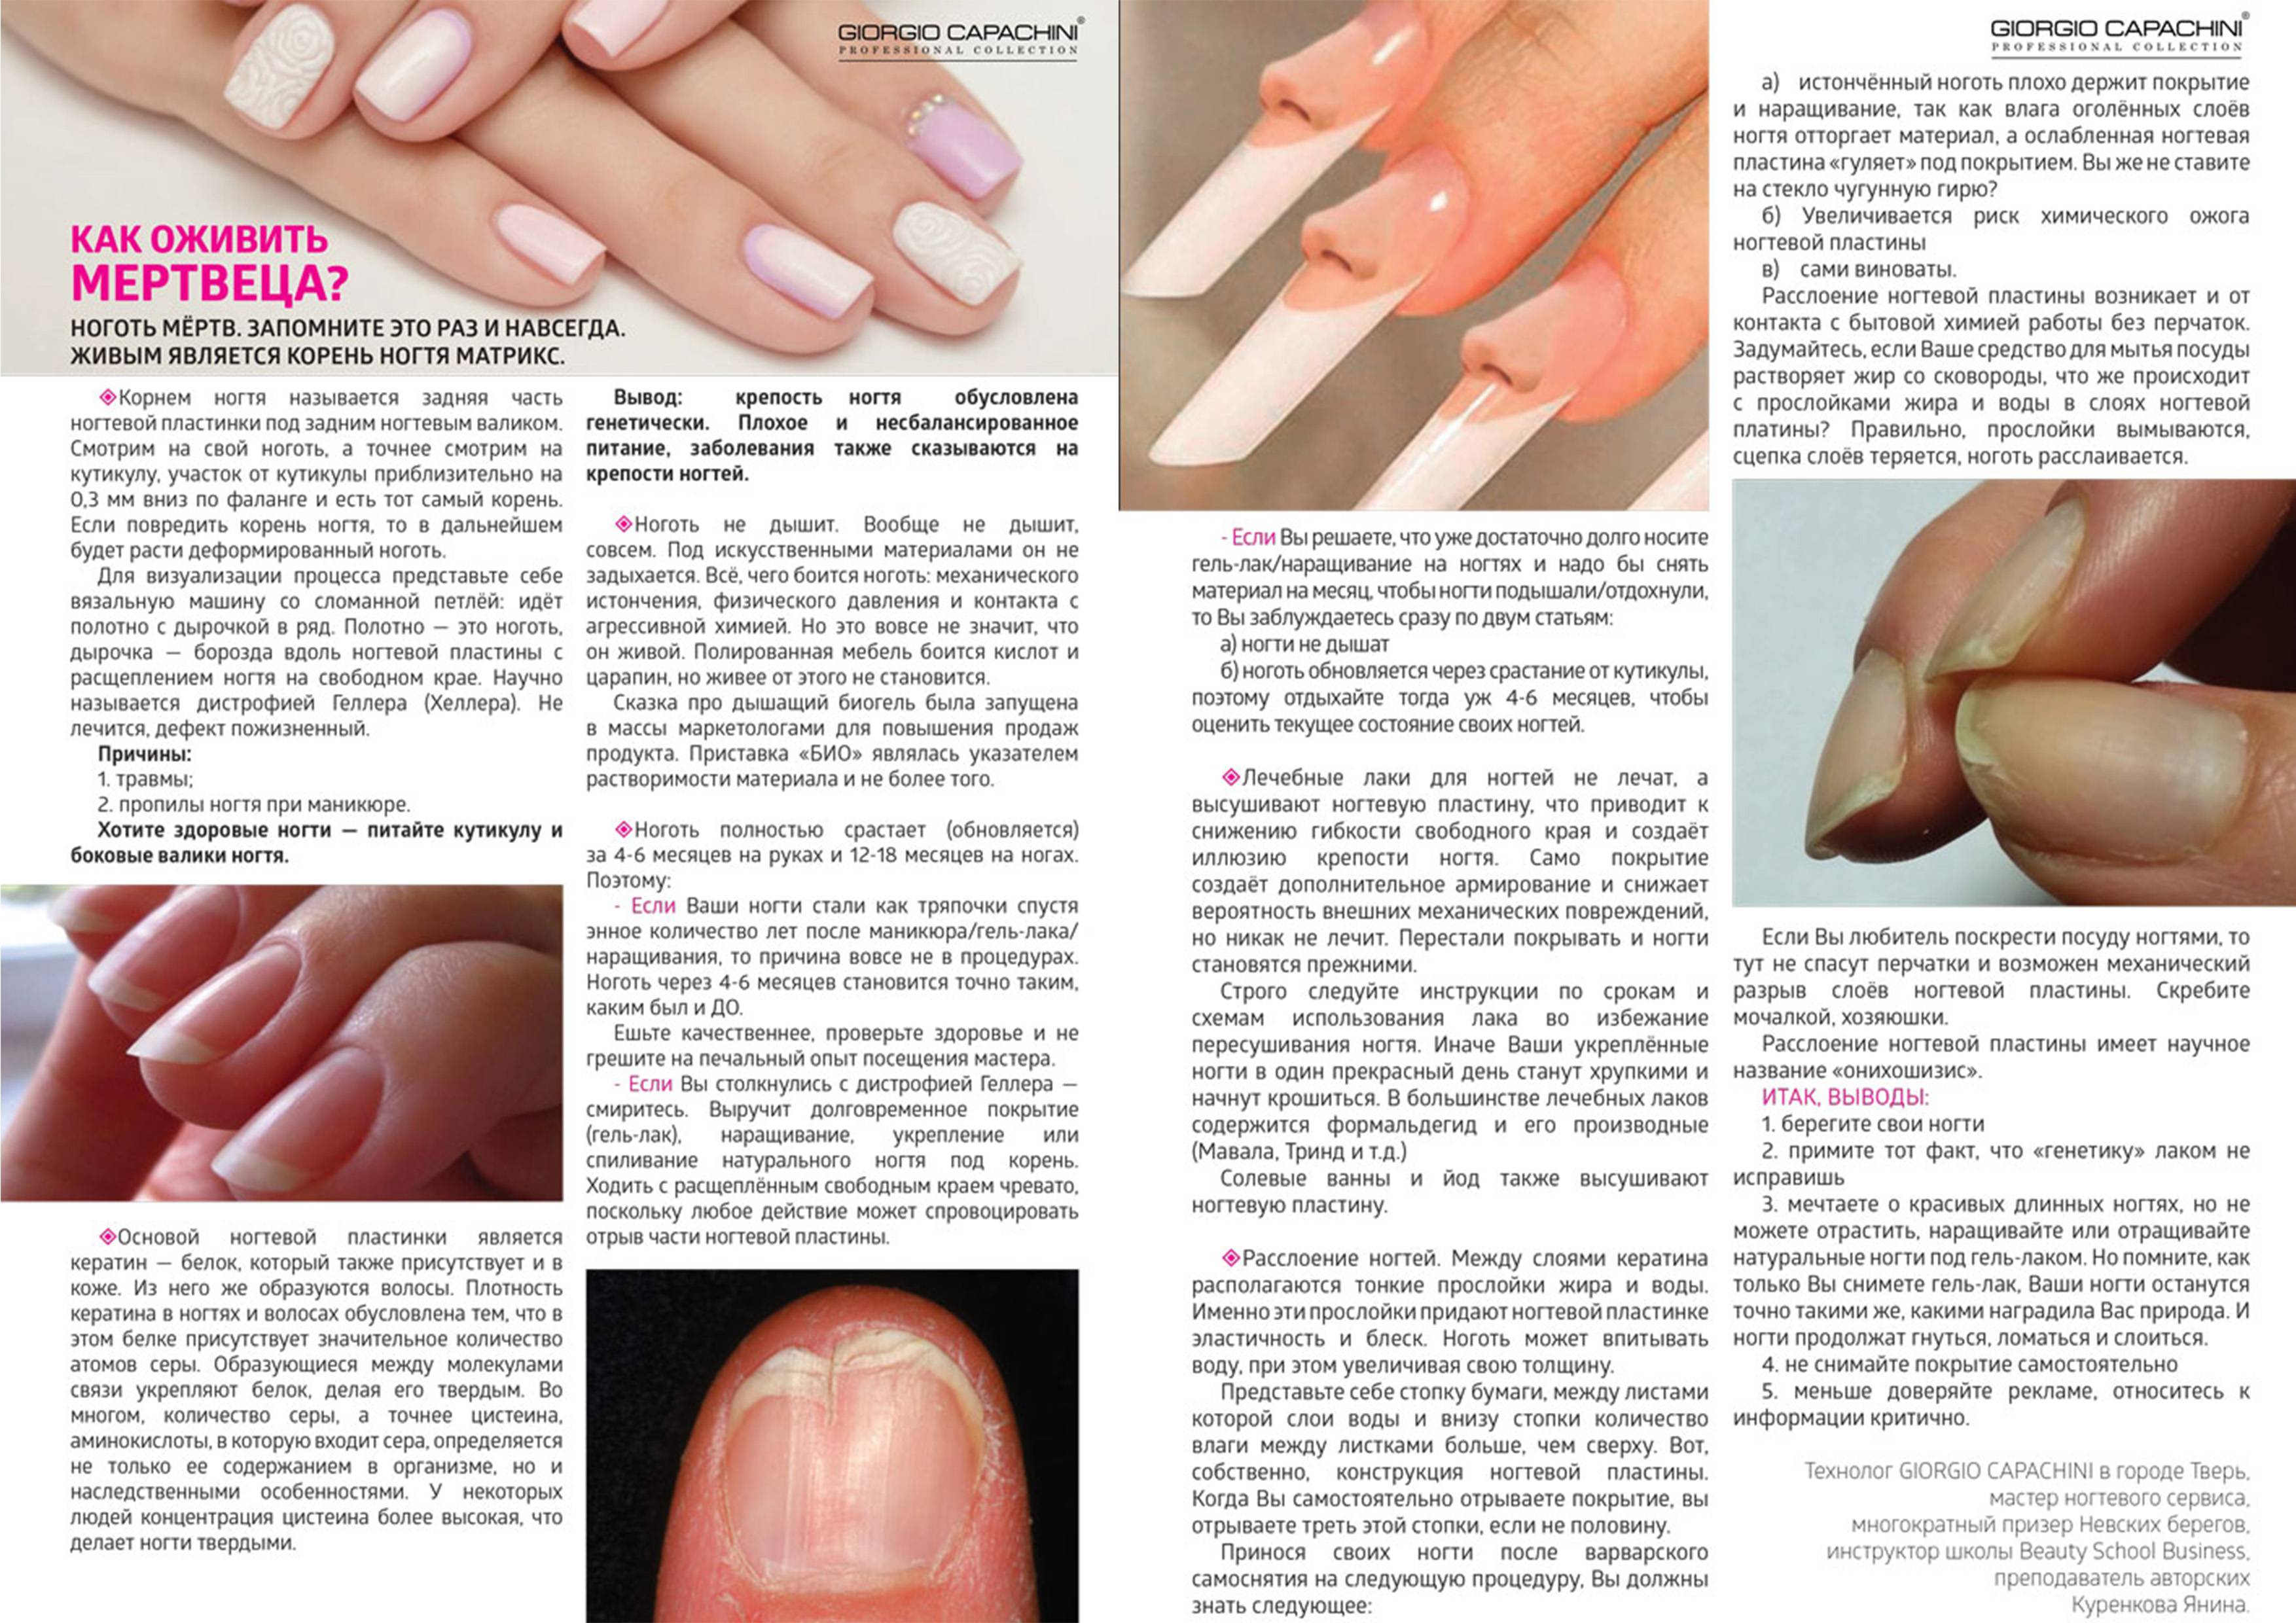 Строение и рост ногтя: как должны выглядеть здоровые ногти и кожа, правила ухода